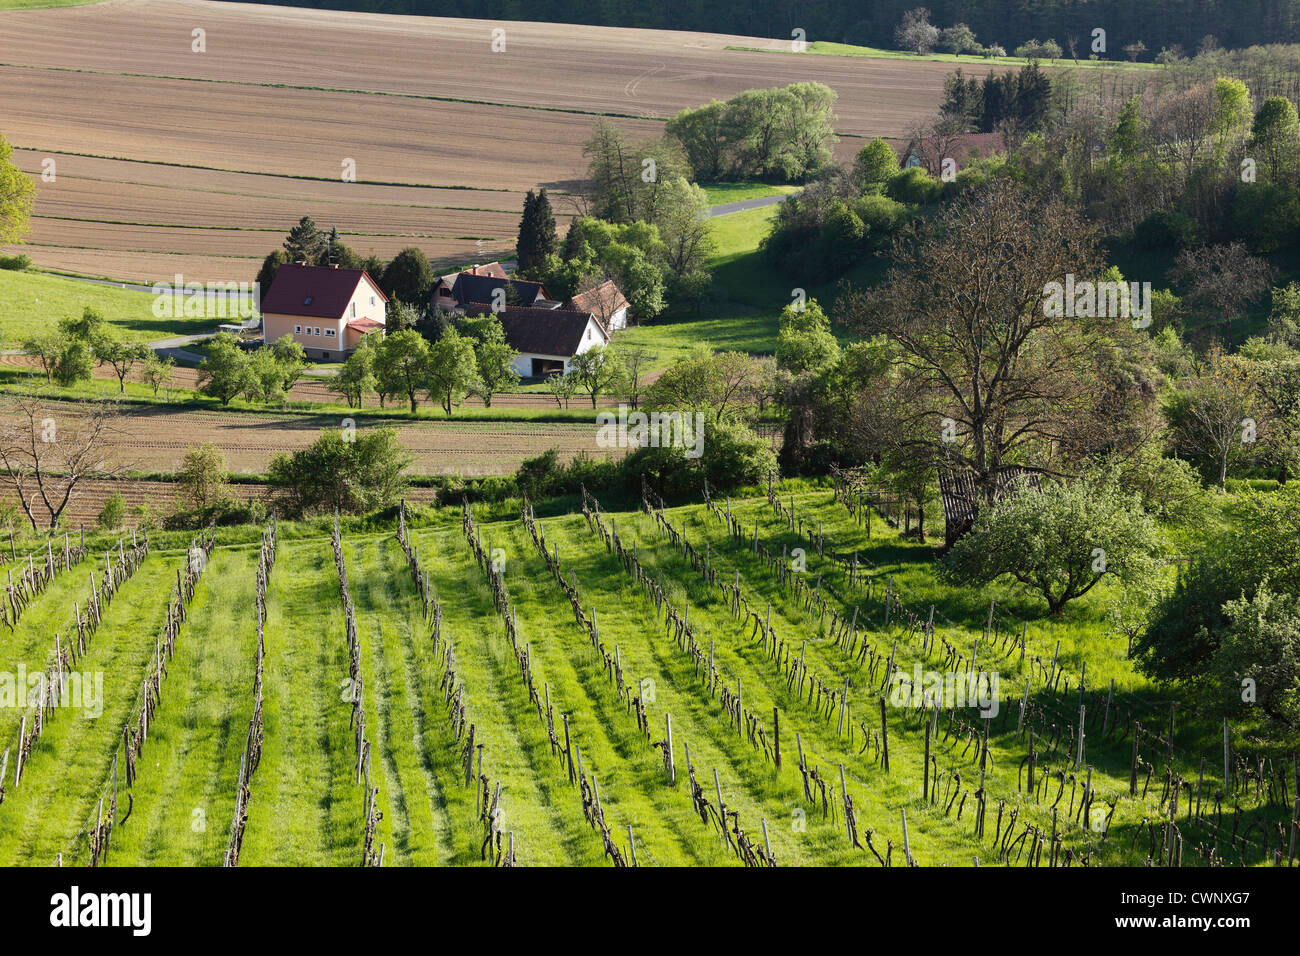 Austria, Styria, View of vineyard at Straden Stock Photo